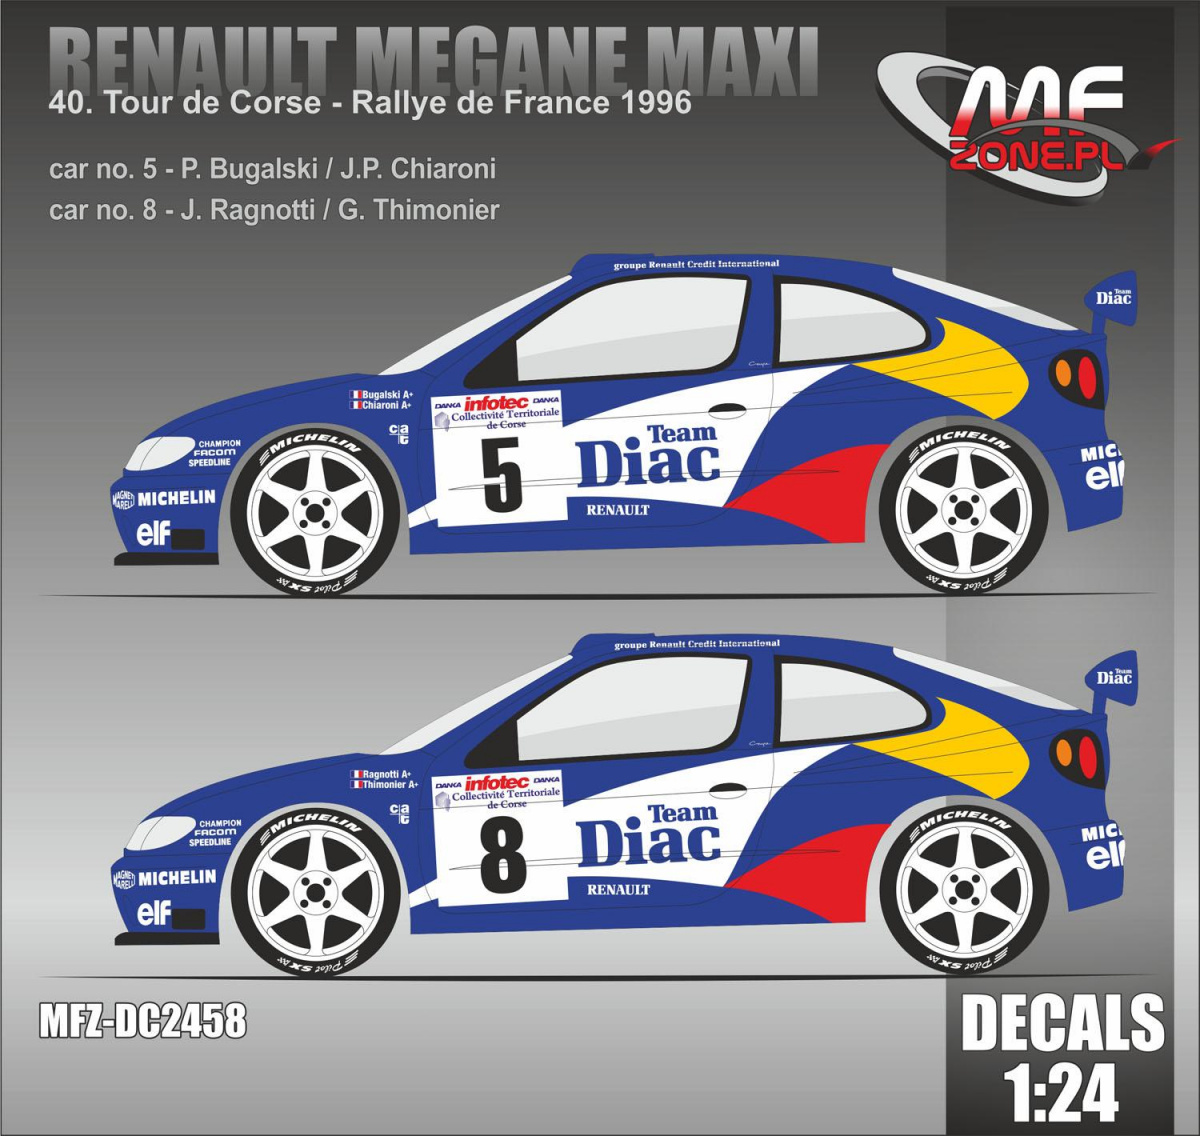 Decals 1/24 ref 27 renault megane maxi kit car gomez rally tour de corse 1996